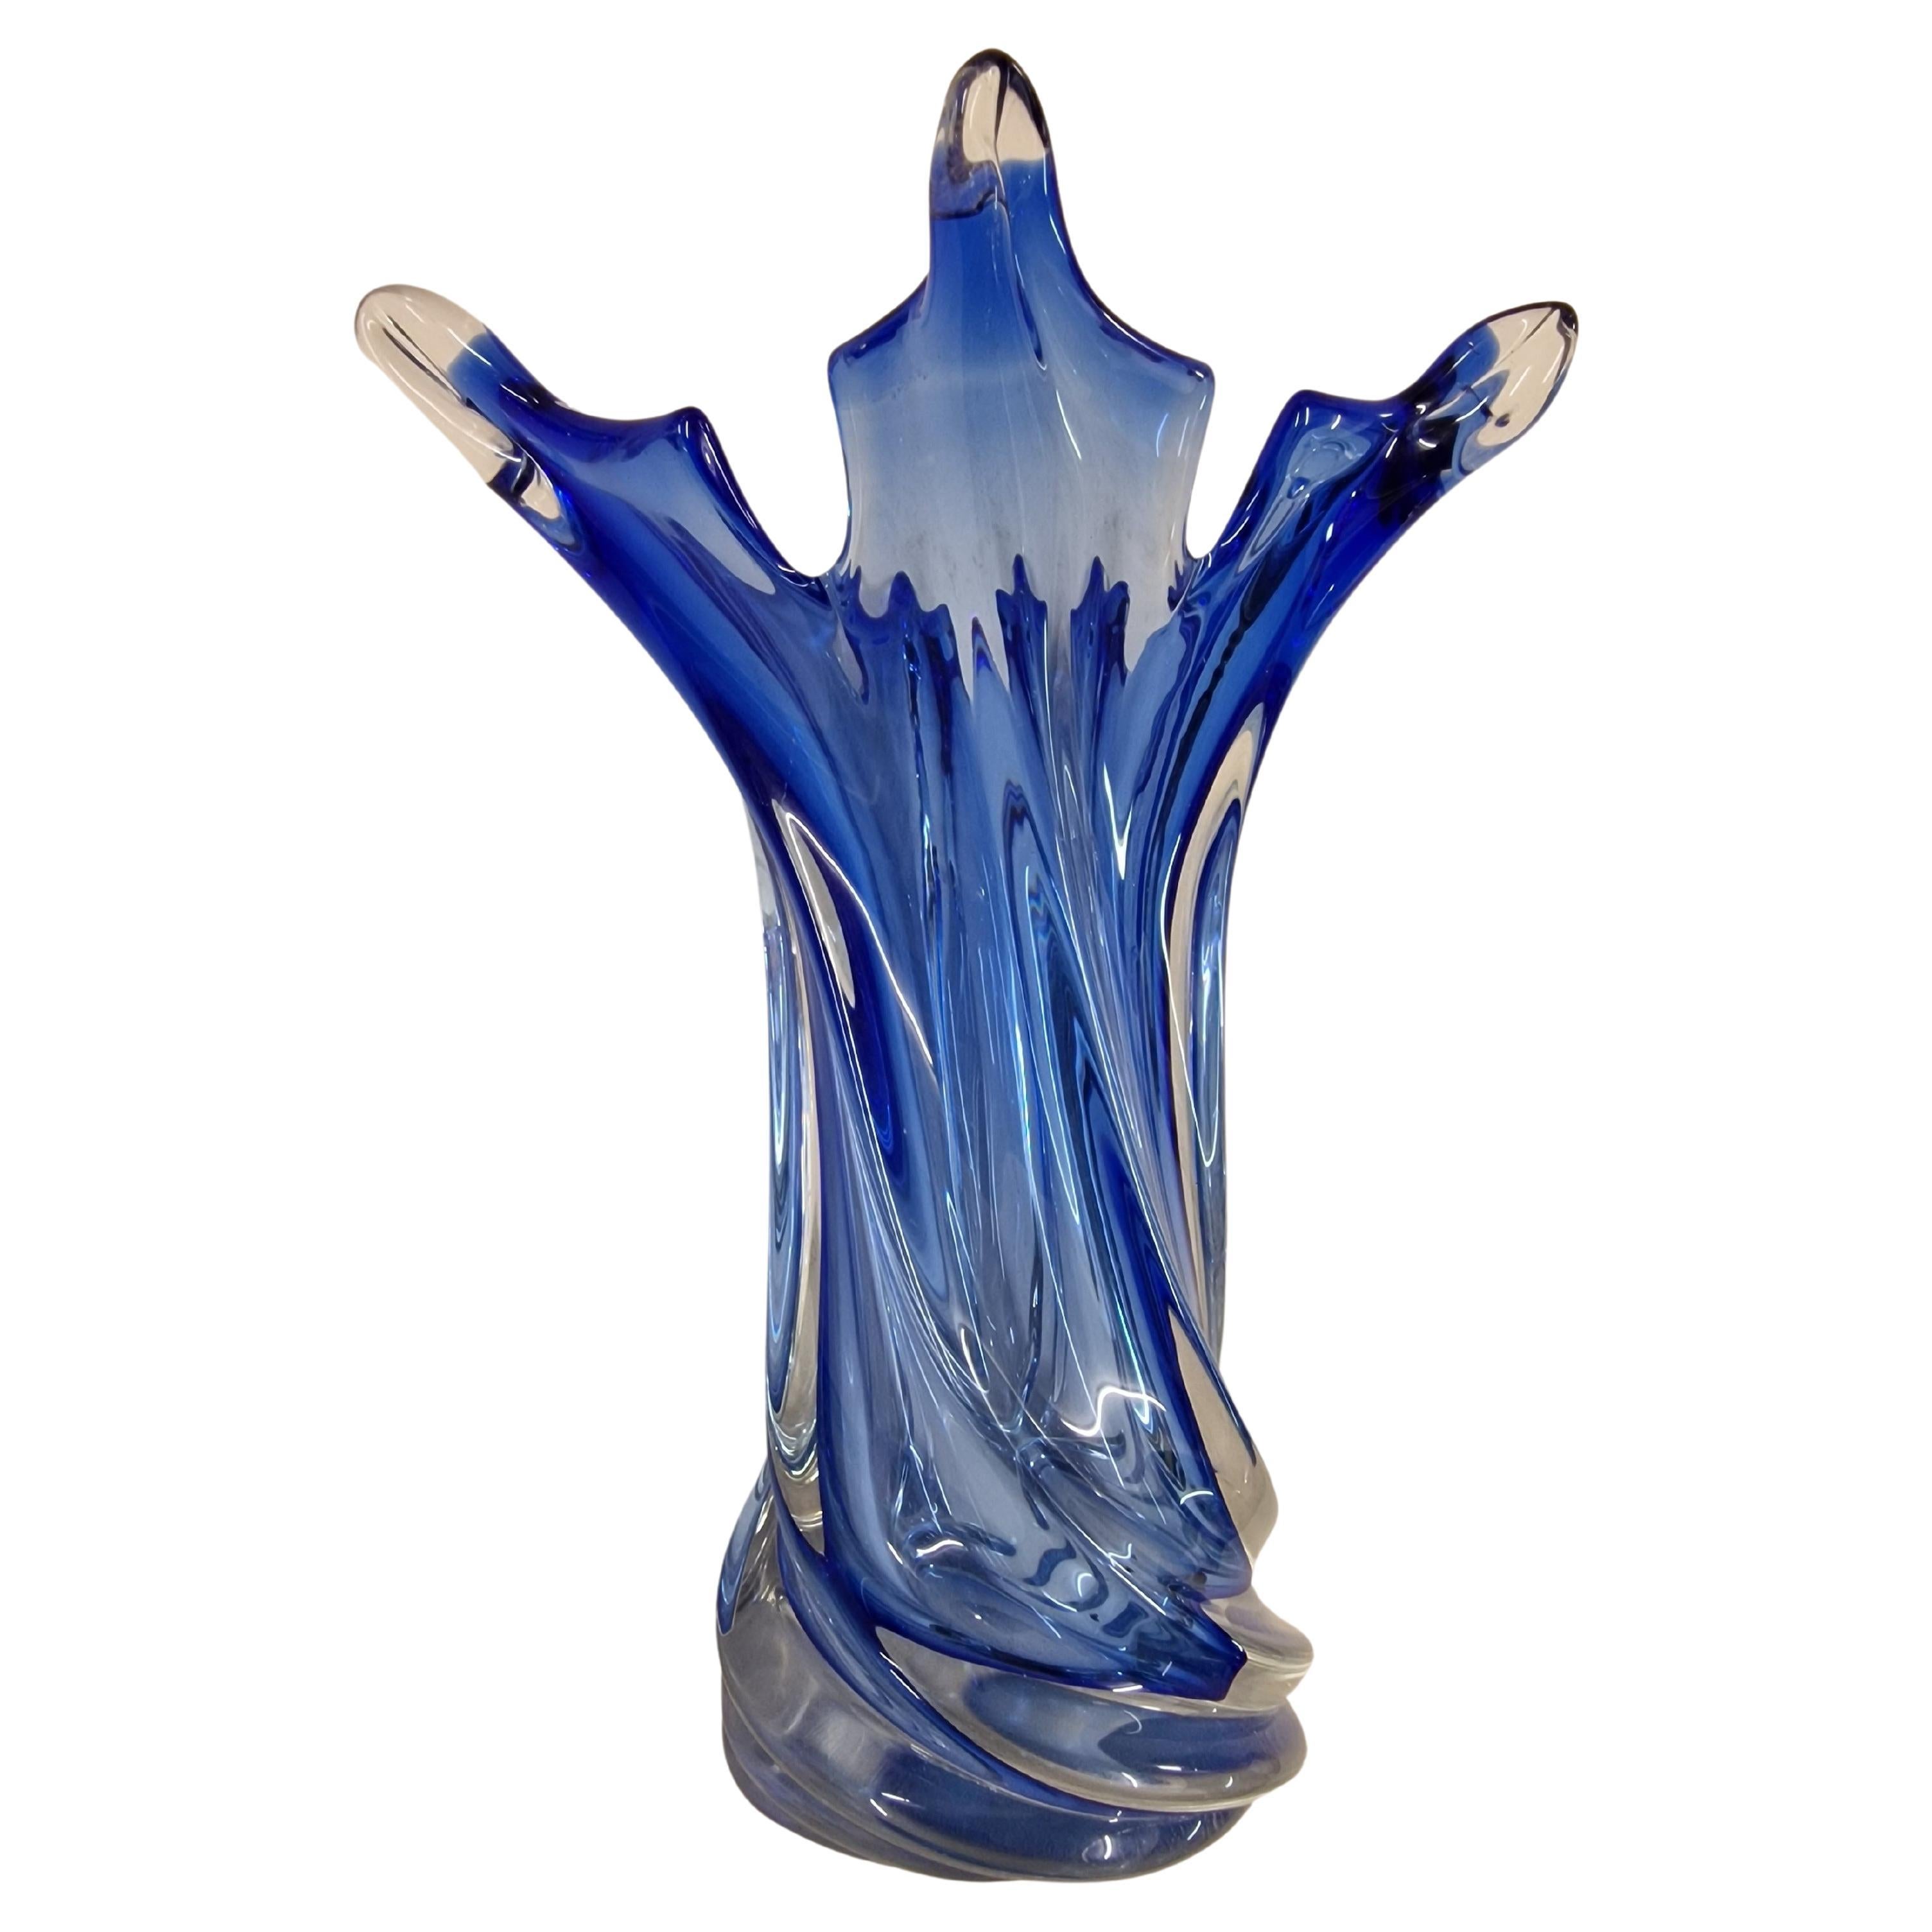 Decorative flower vase, Murano art glass, blown glass, 1970s Murano Venice Italy